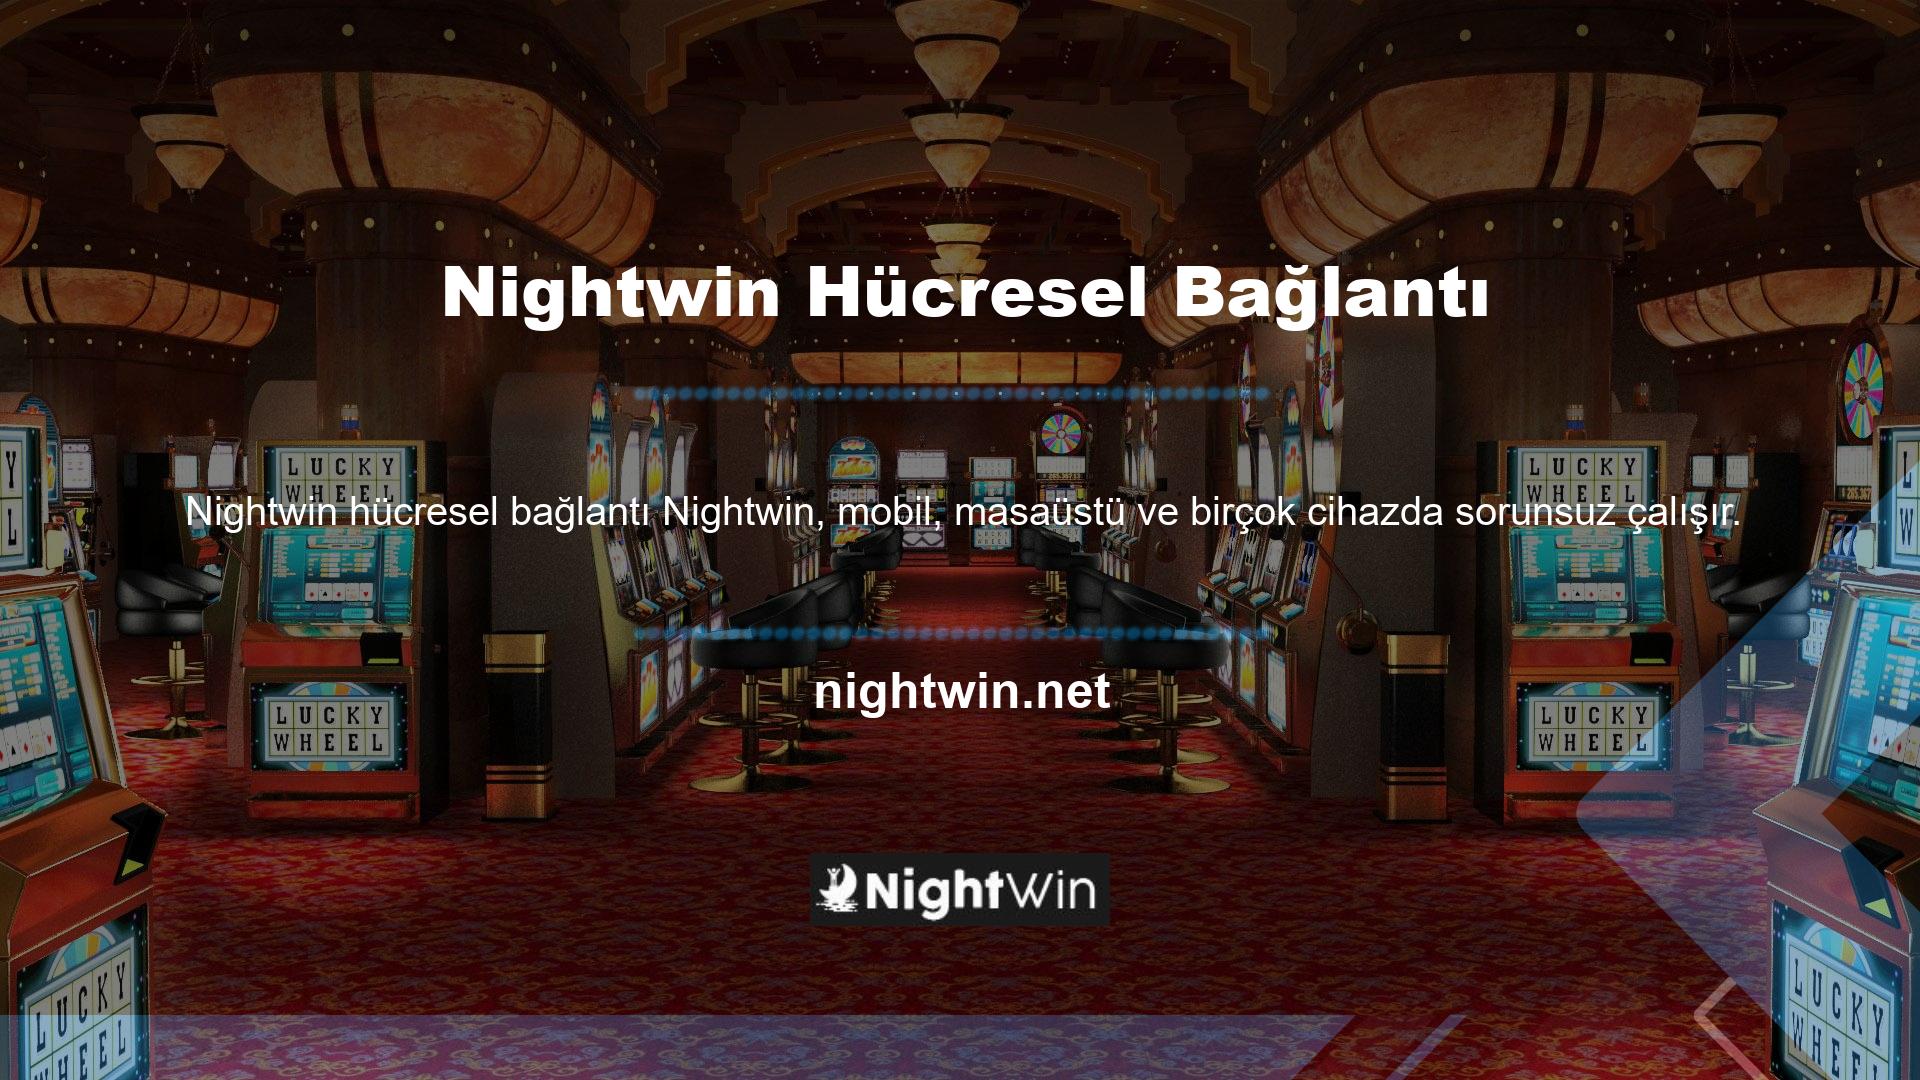 Nightwin alanında, özellikle bu konuda tek kişi olduğu biliniyor